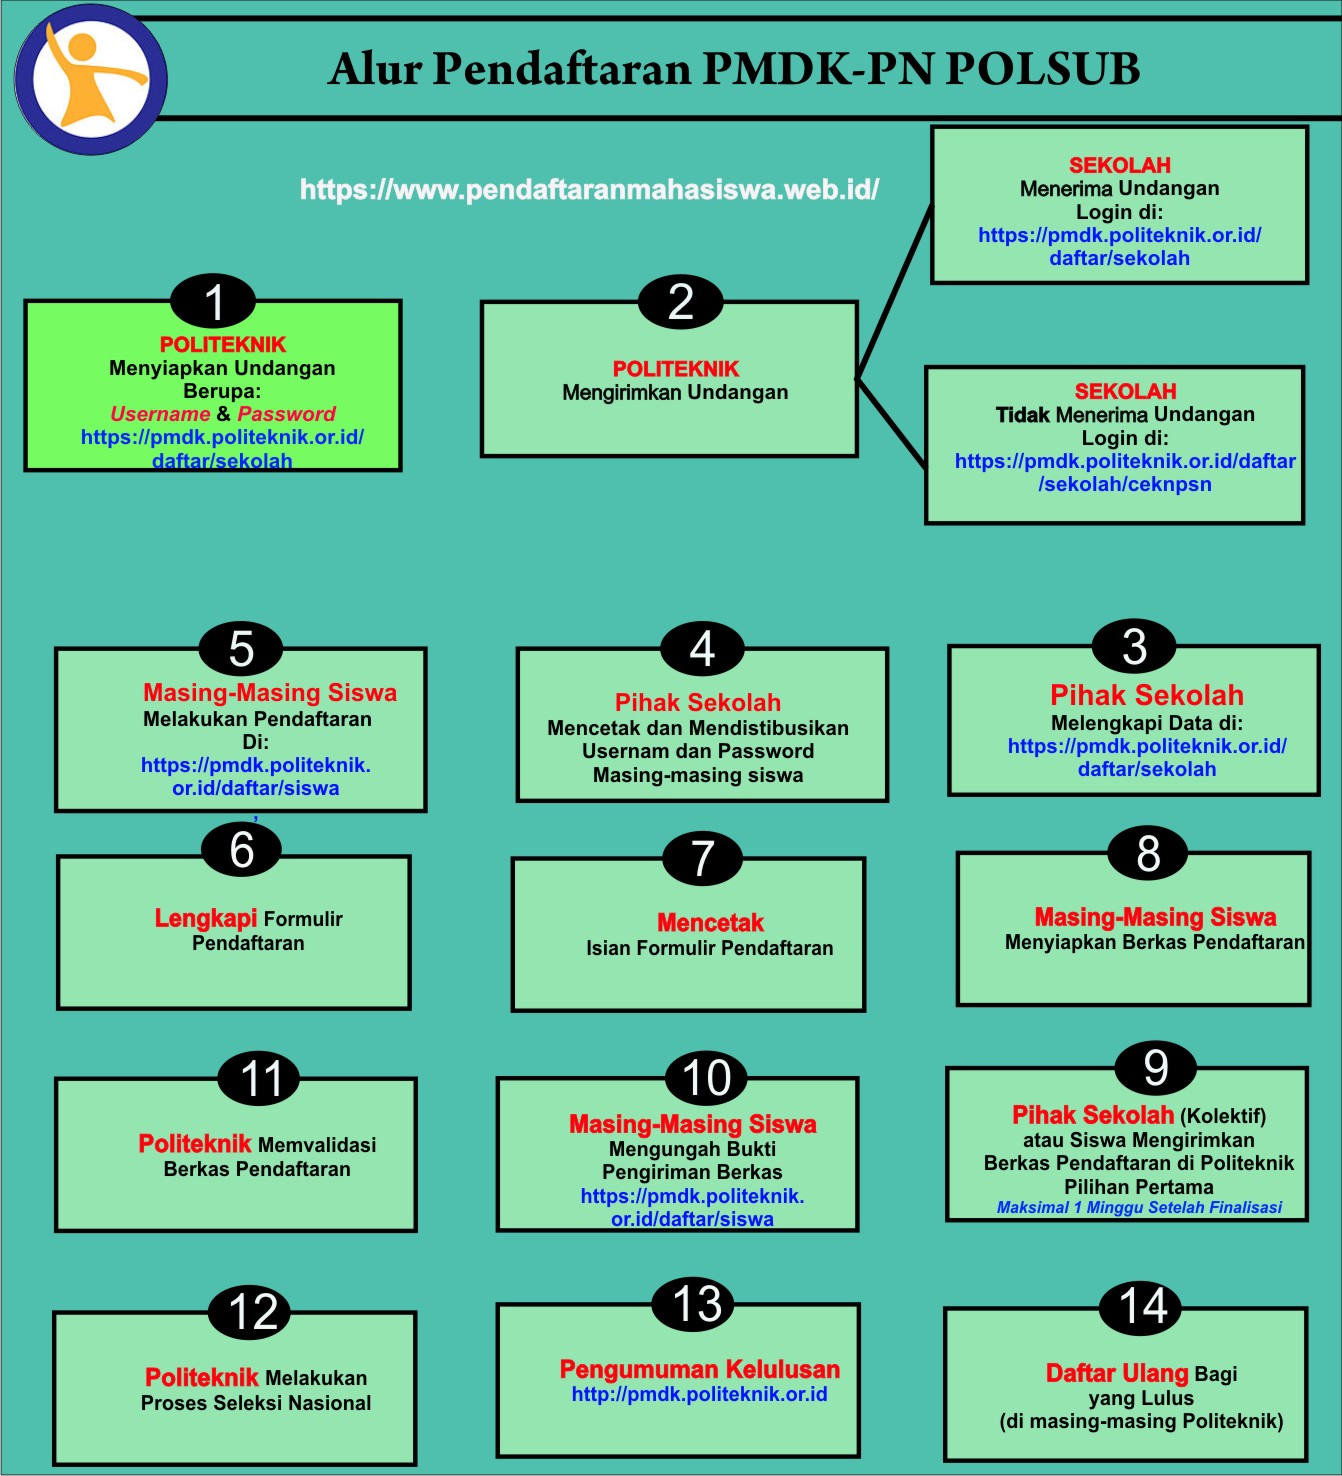 Tata cara pendaftaran PMDK PN POLSUB seperti pada gambar di bawah ini